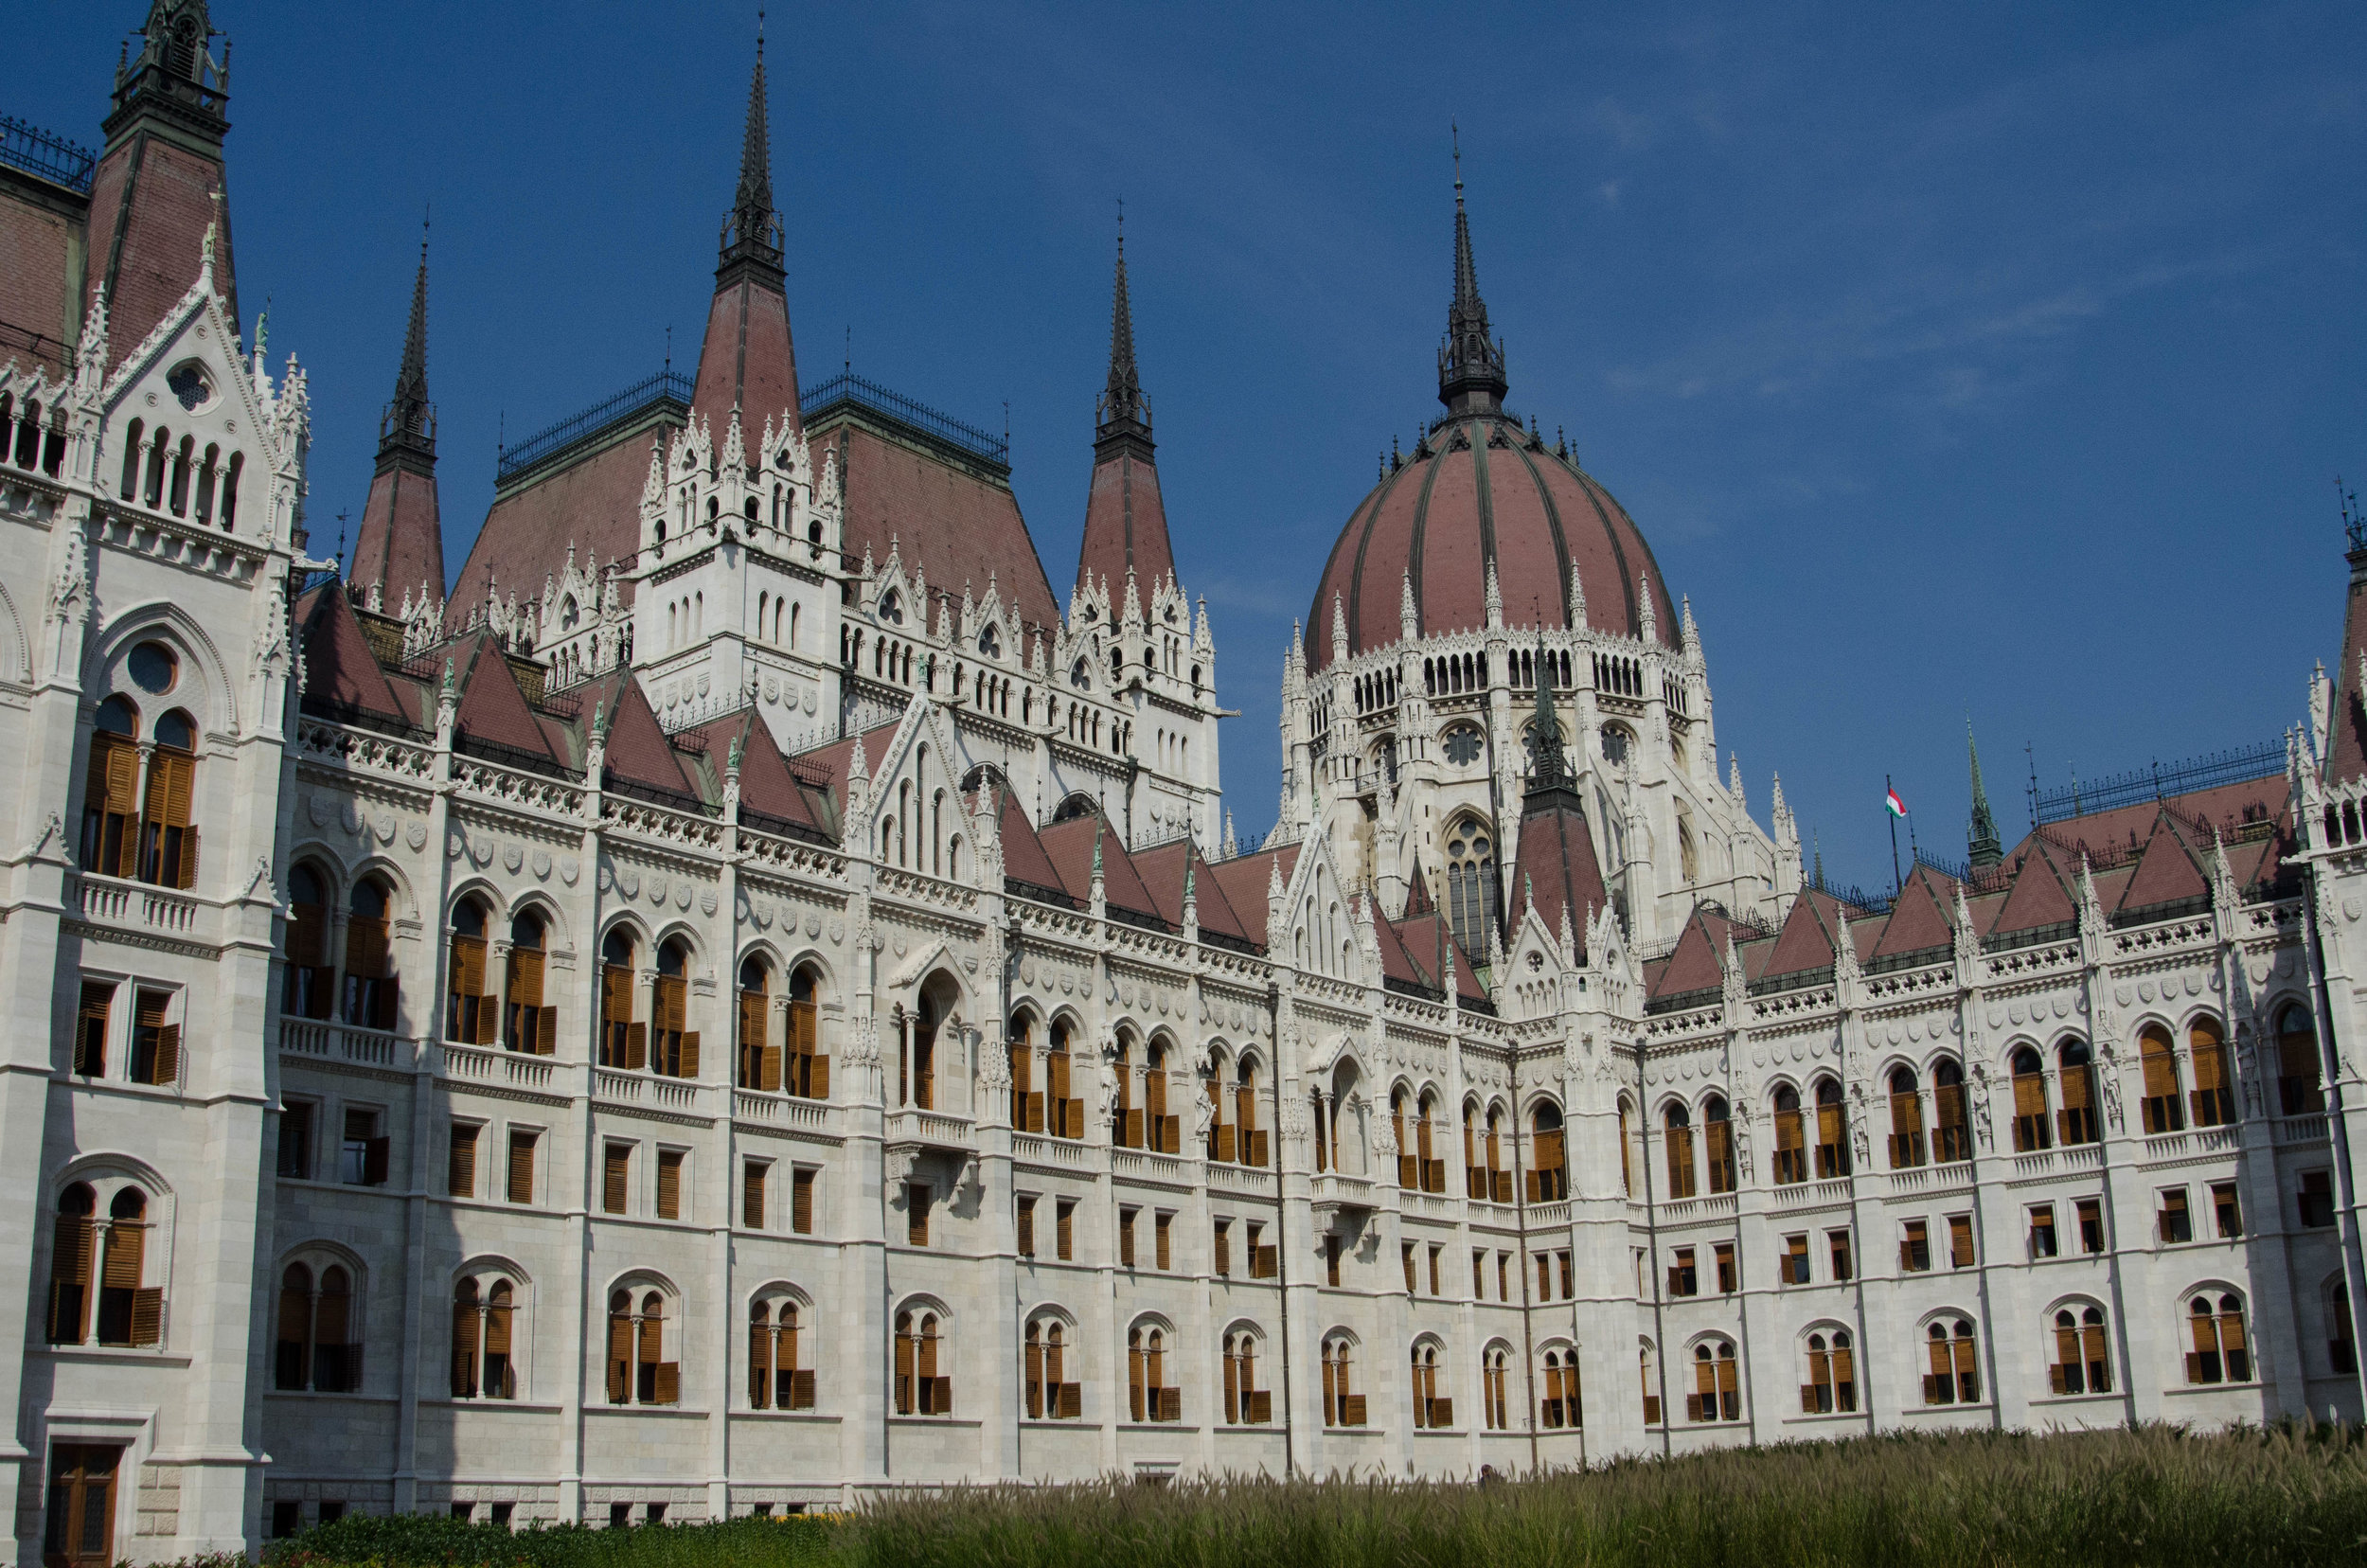 Parliament building, Budapest, Hungary